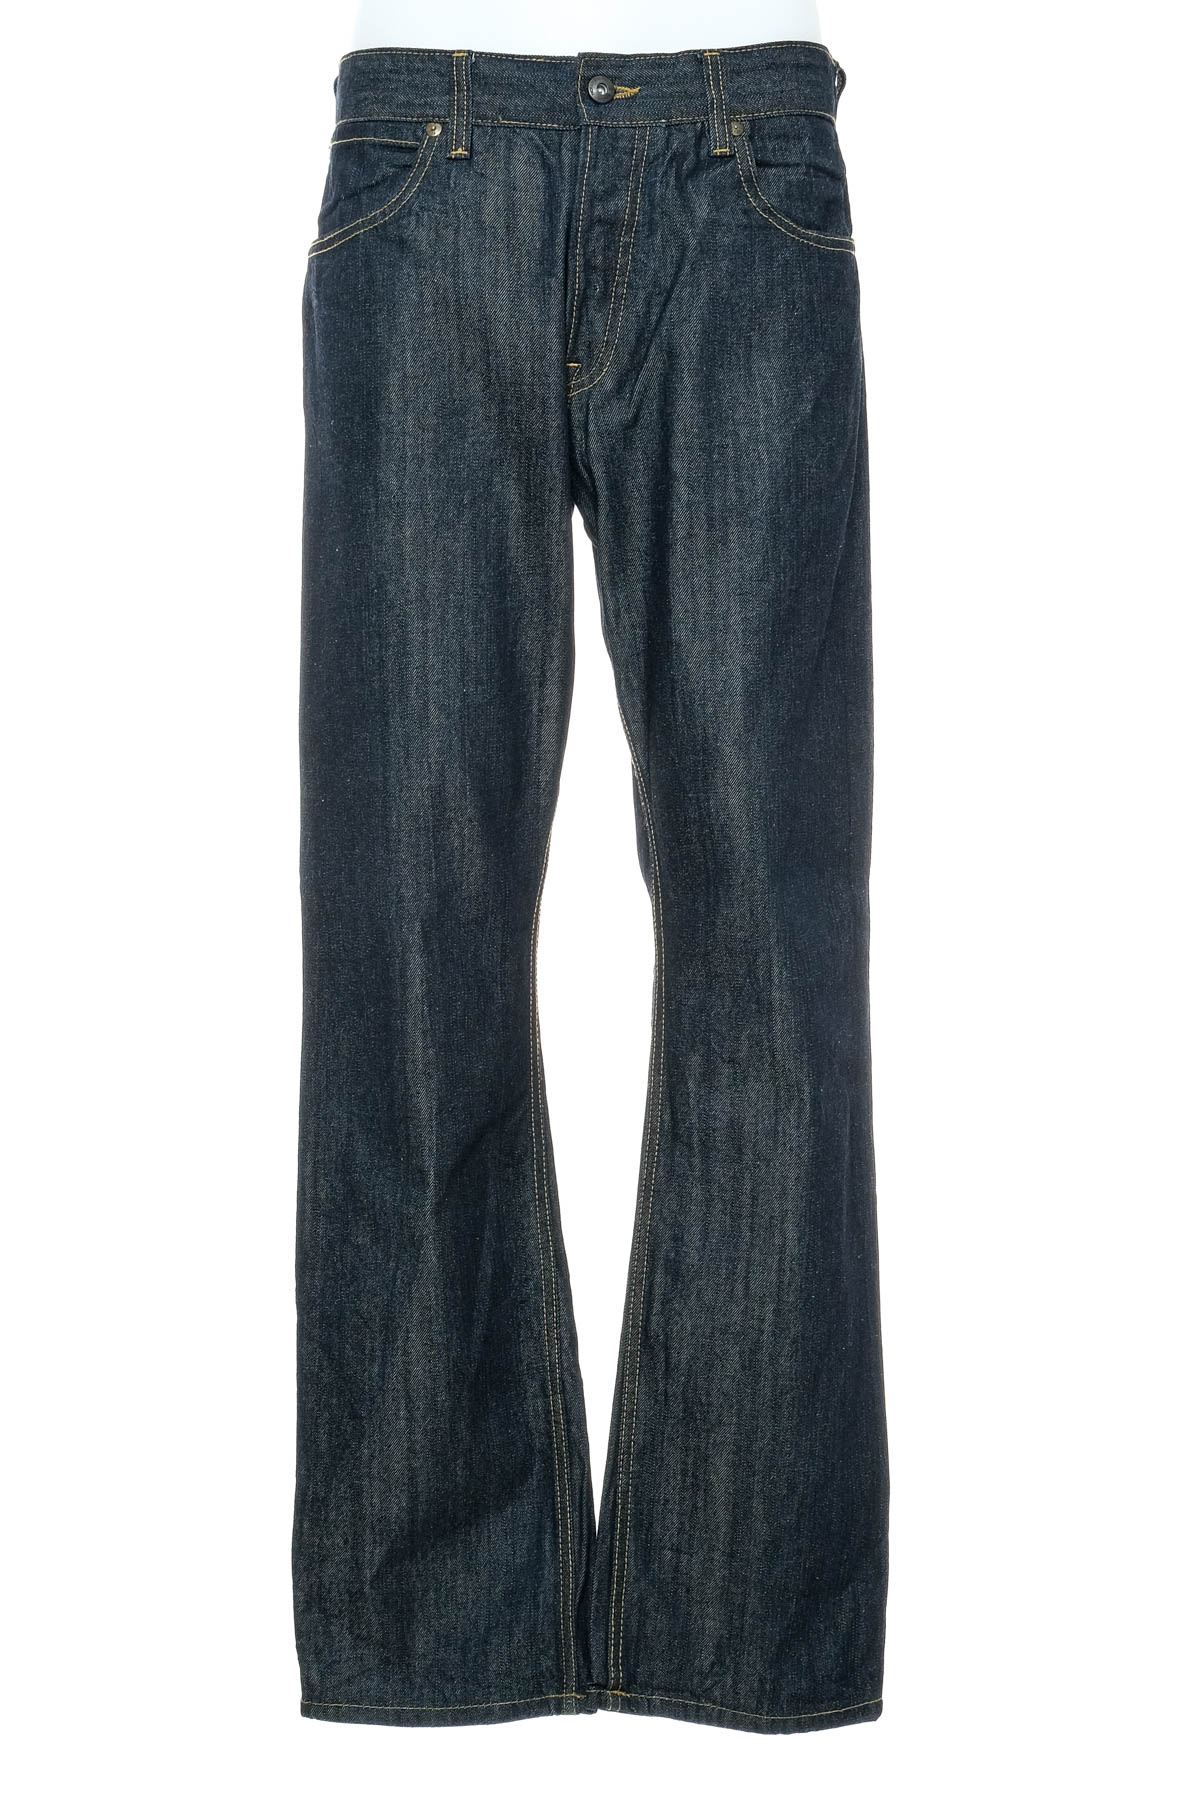 Jeans pentru bărbăți - French Connection - 0